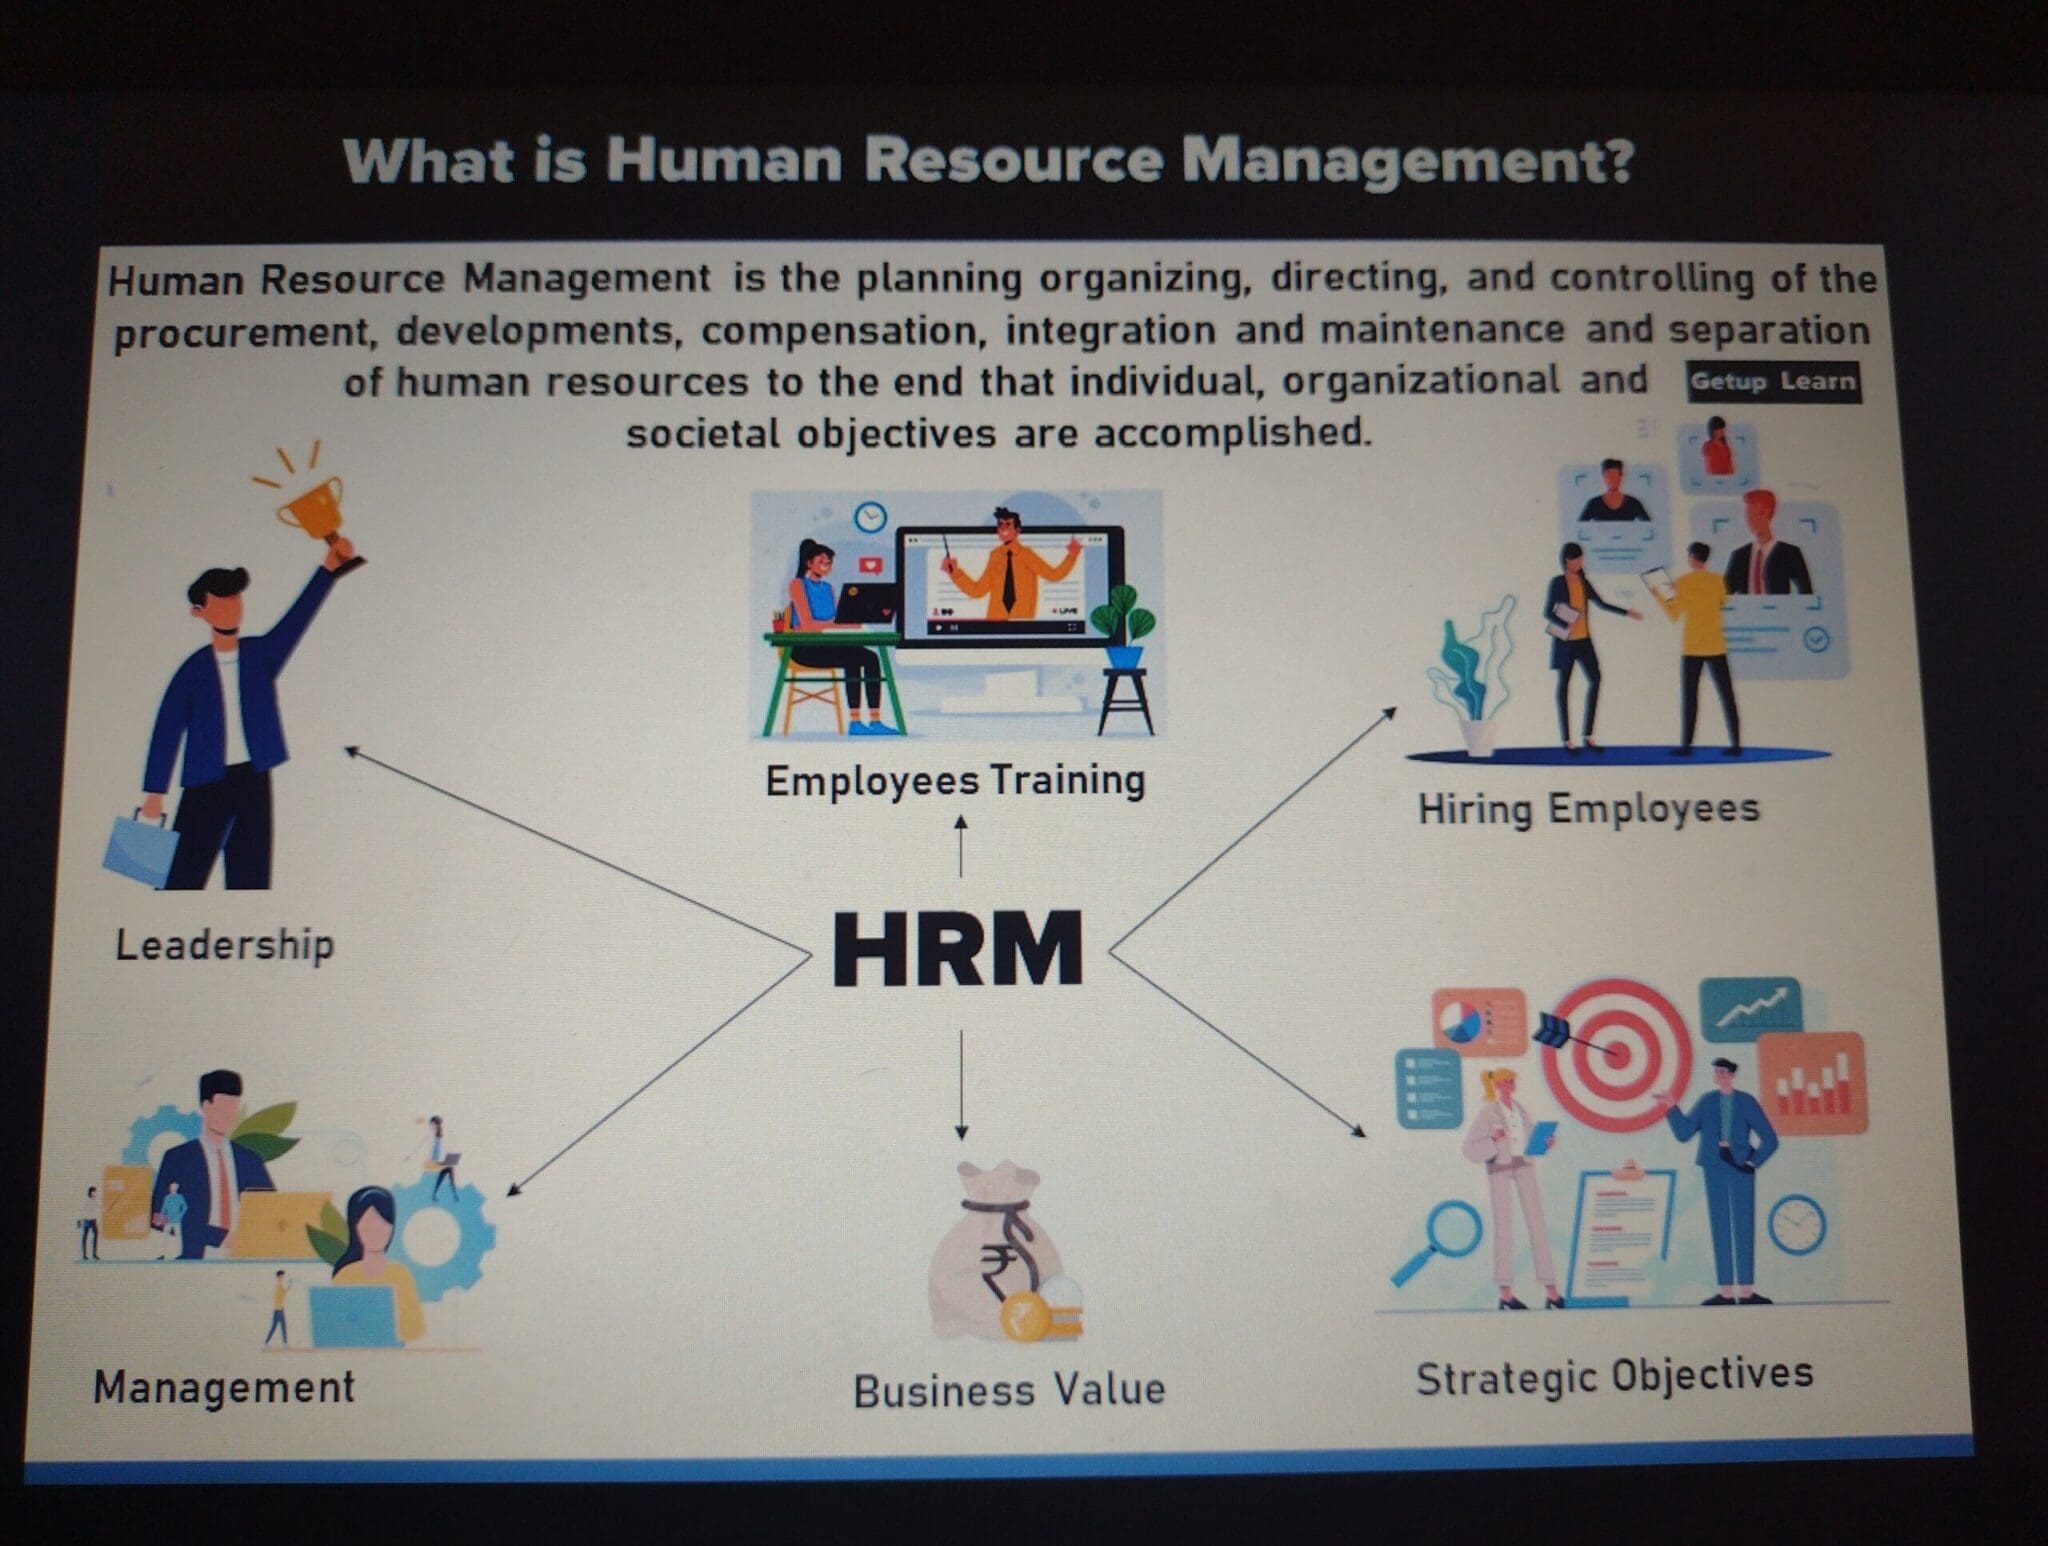 gestione delle risorse umane in scala